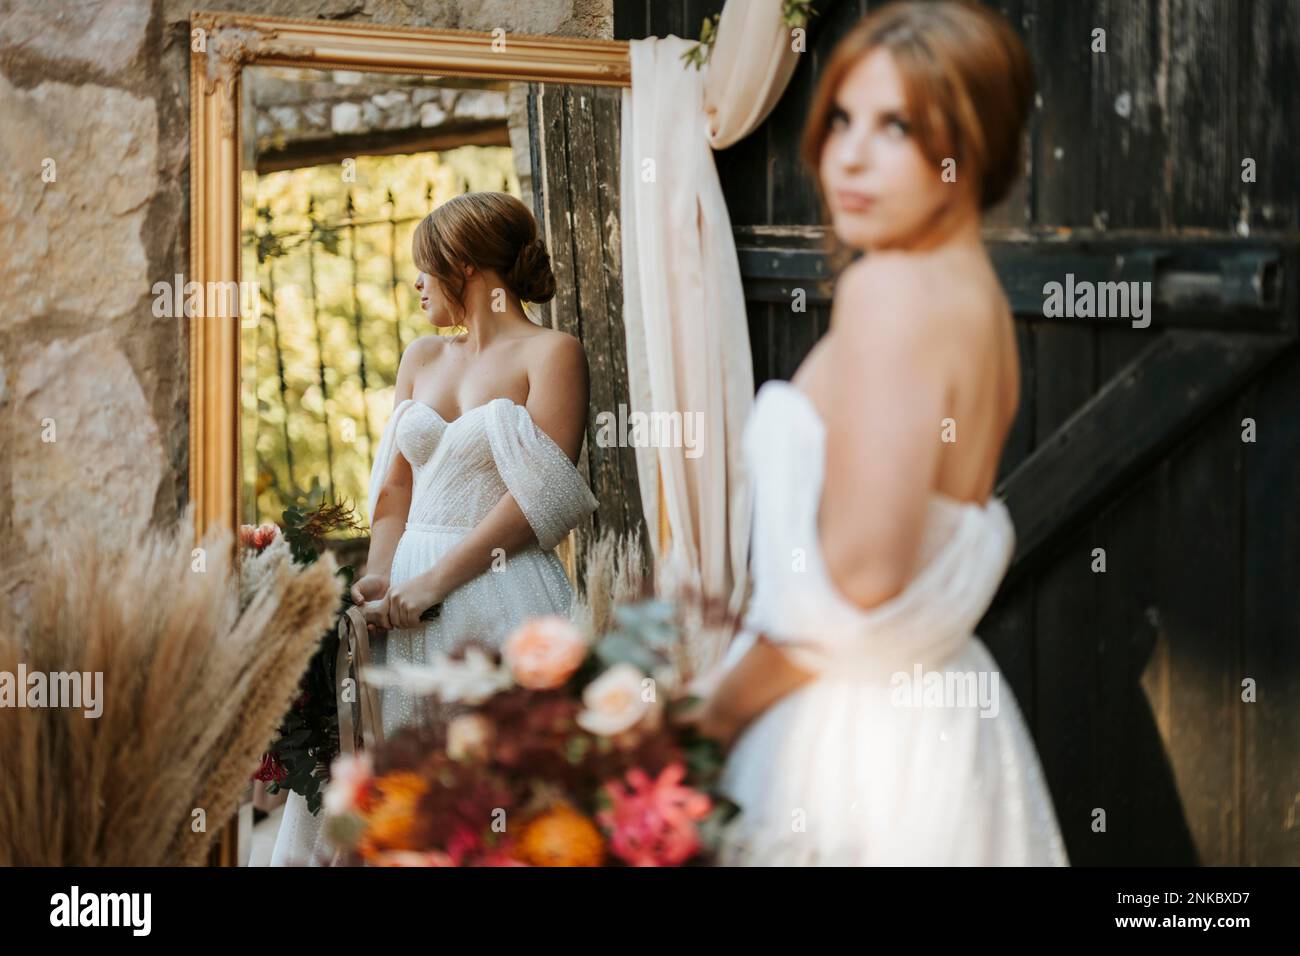 Beautiful bride in rustic arrangement, vintage mirror, wooden door Stock Photo